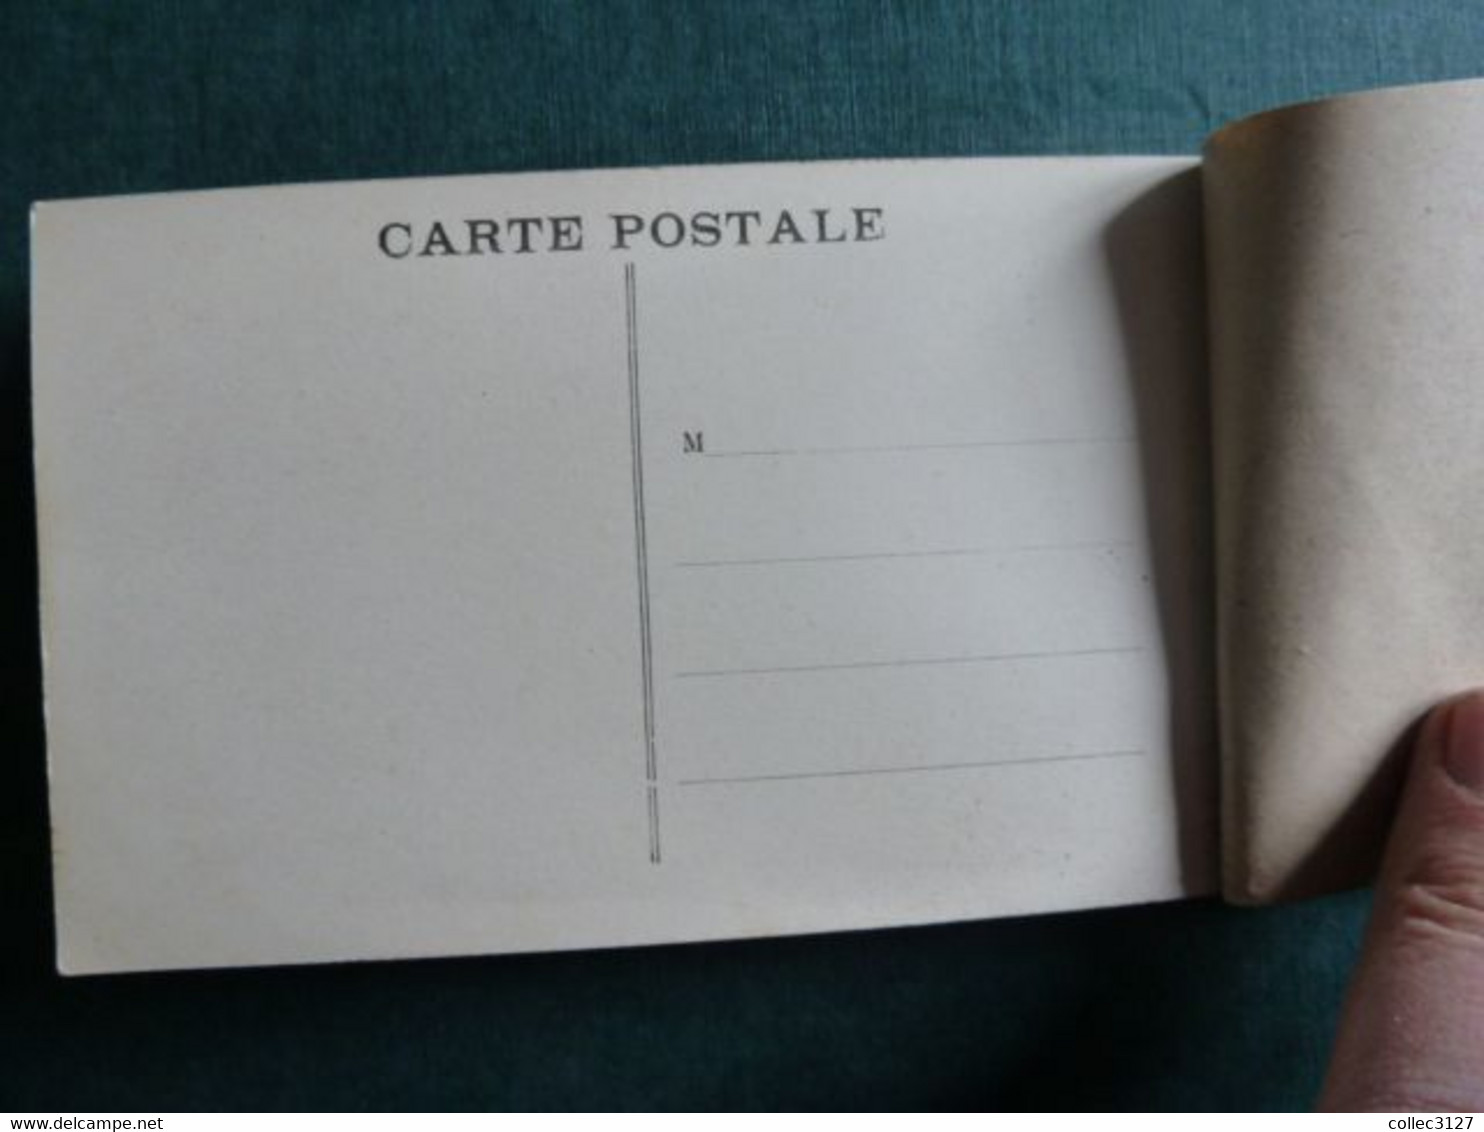 F21 - 11 - Album Souvenir du Monastere de Prouille - Carnet de 8 Cartes détachables - complet